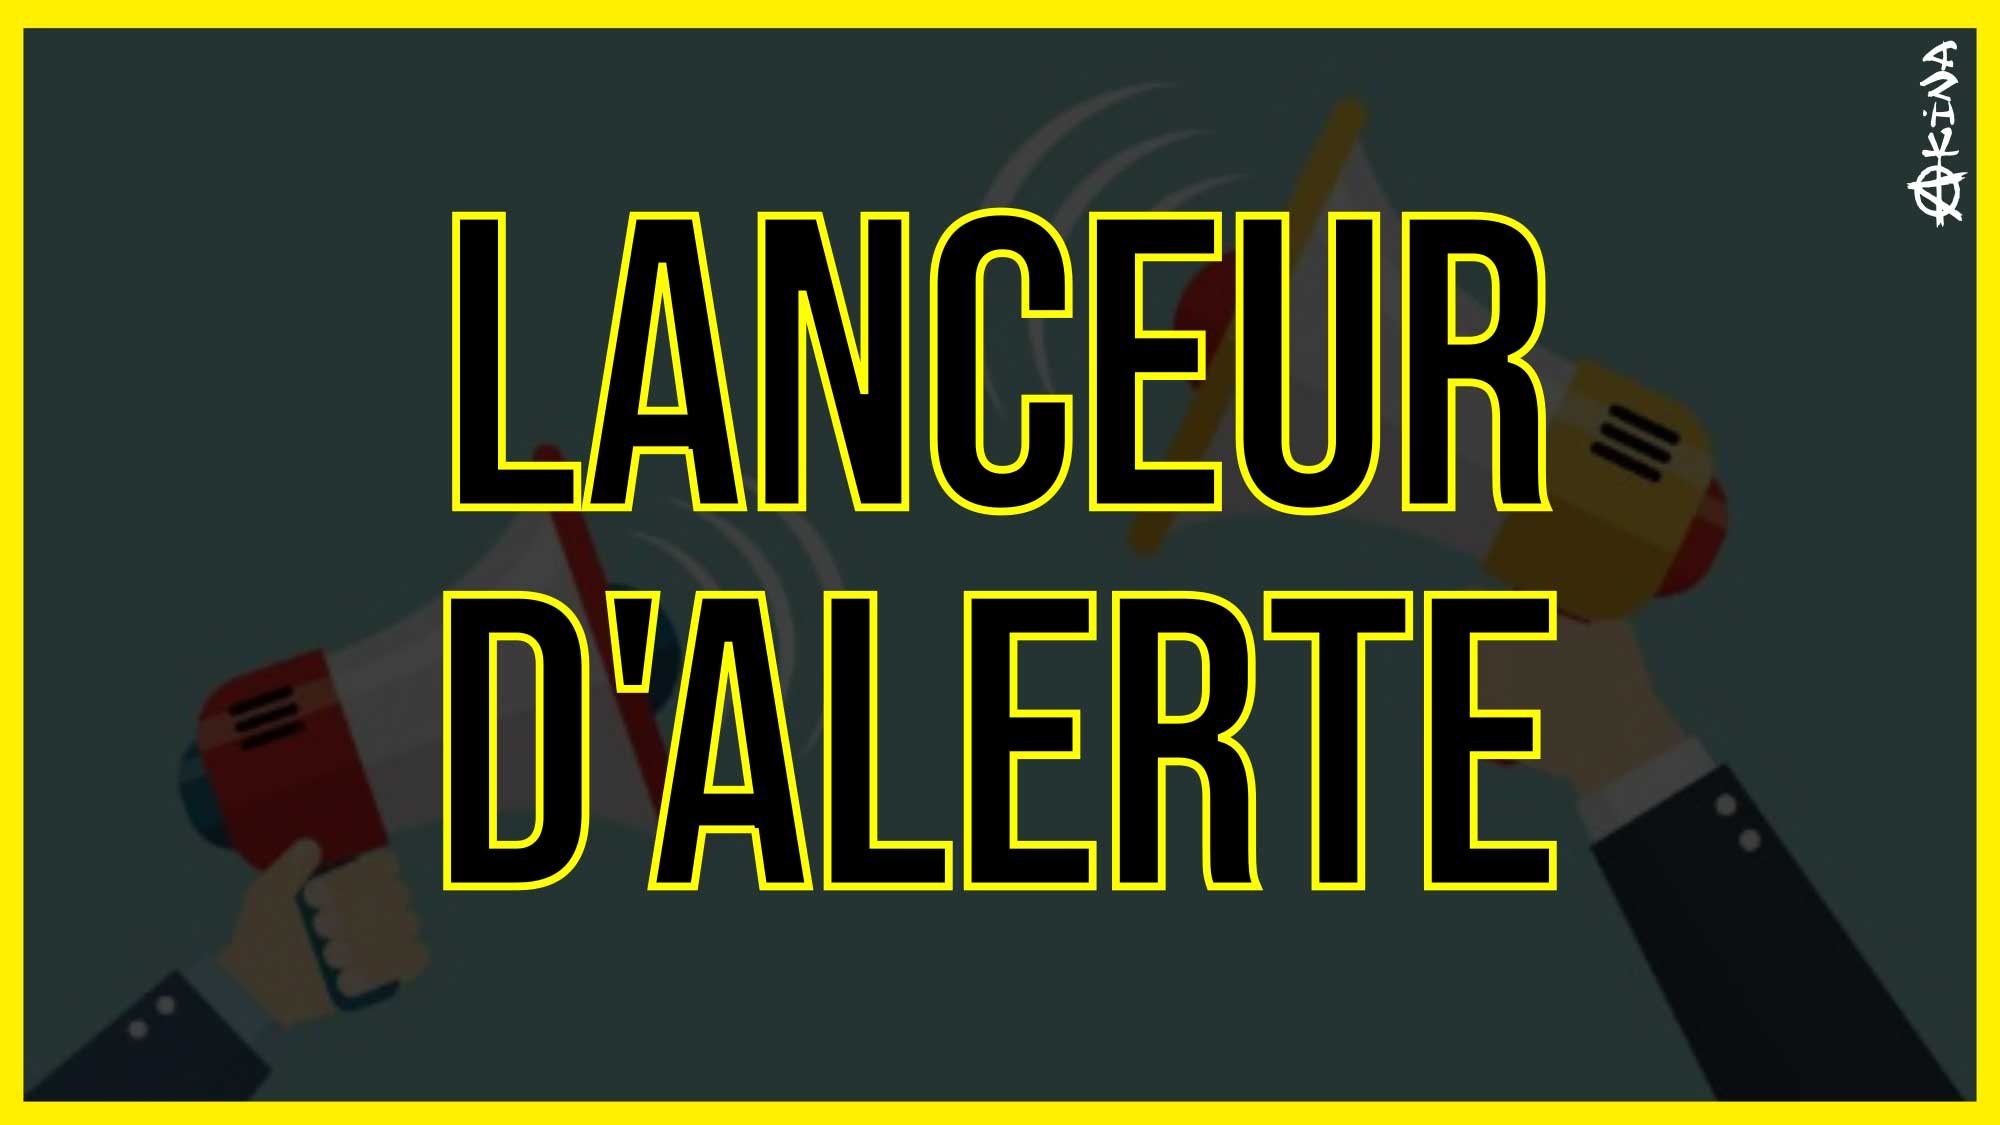 Lanceur dAlerte